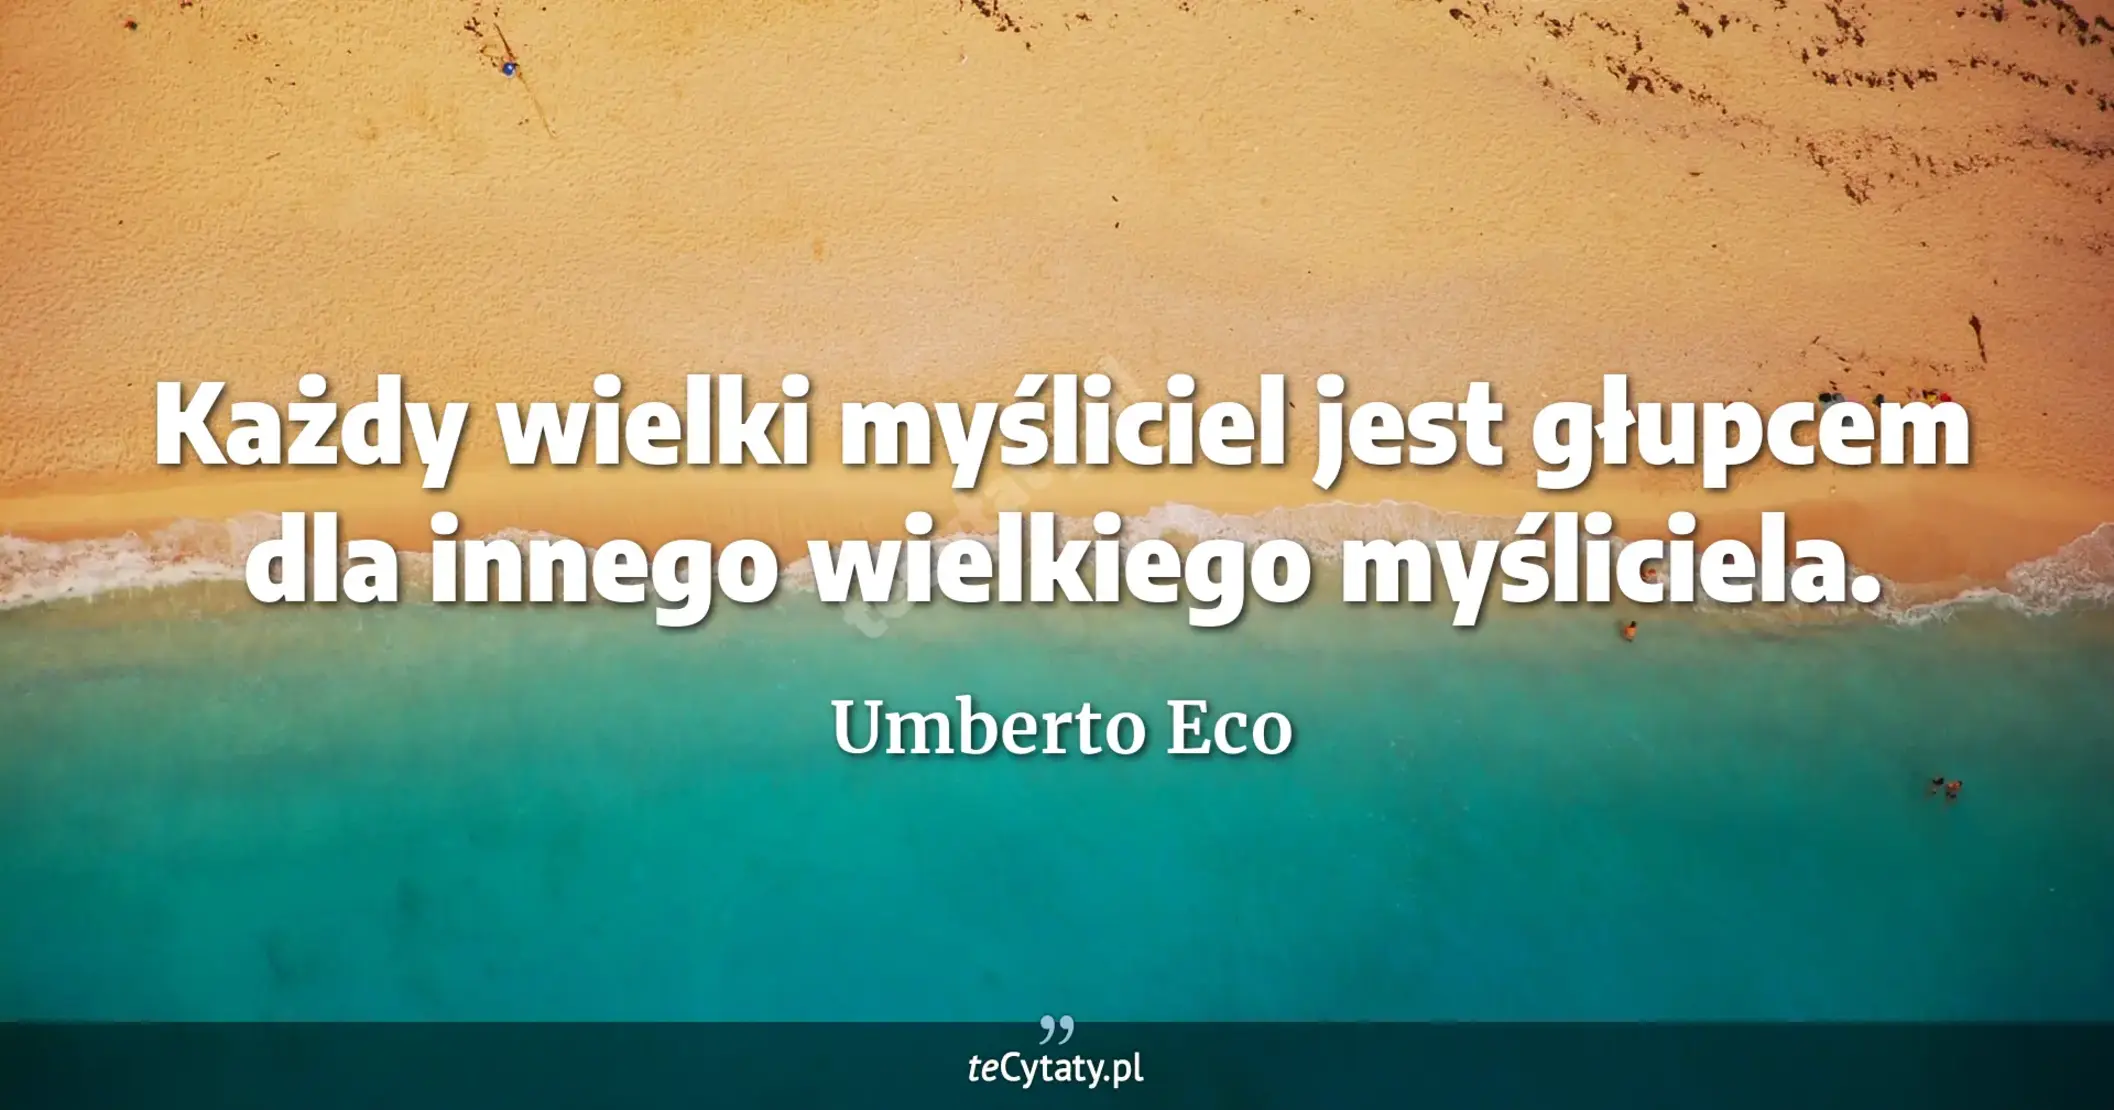 Każdy wielki myśliciel jest głupcem dla innego wielkiego myśliciela. - Umberto Eco